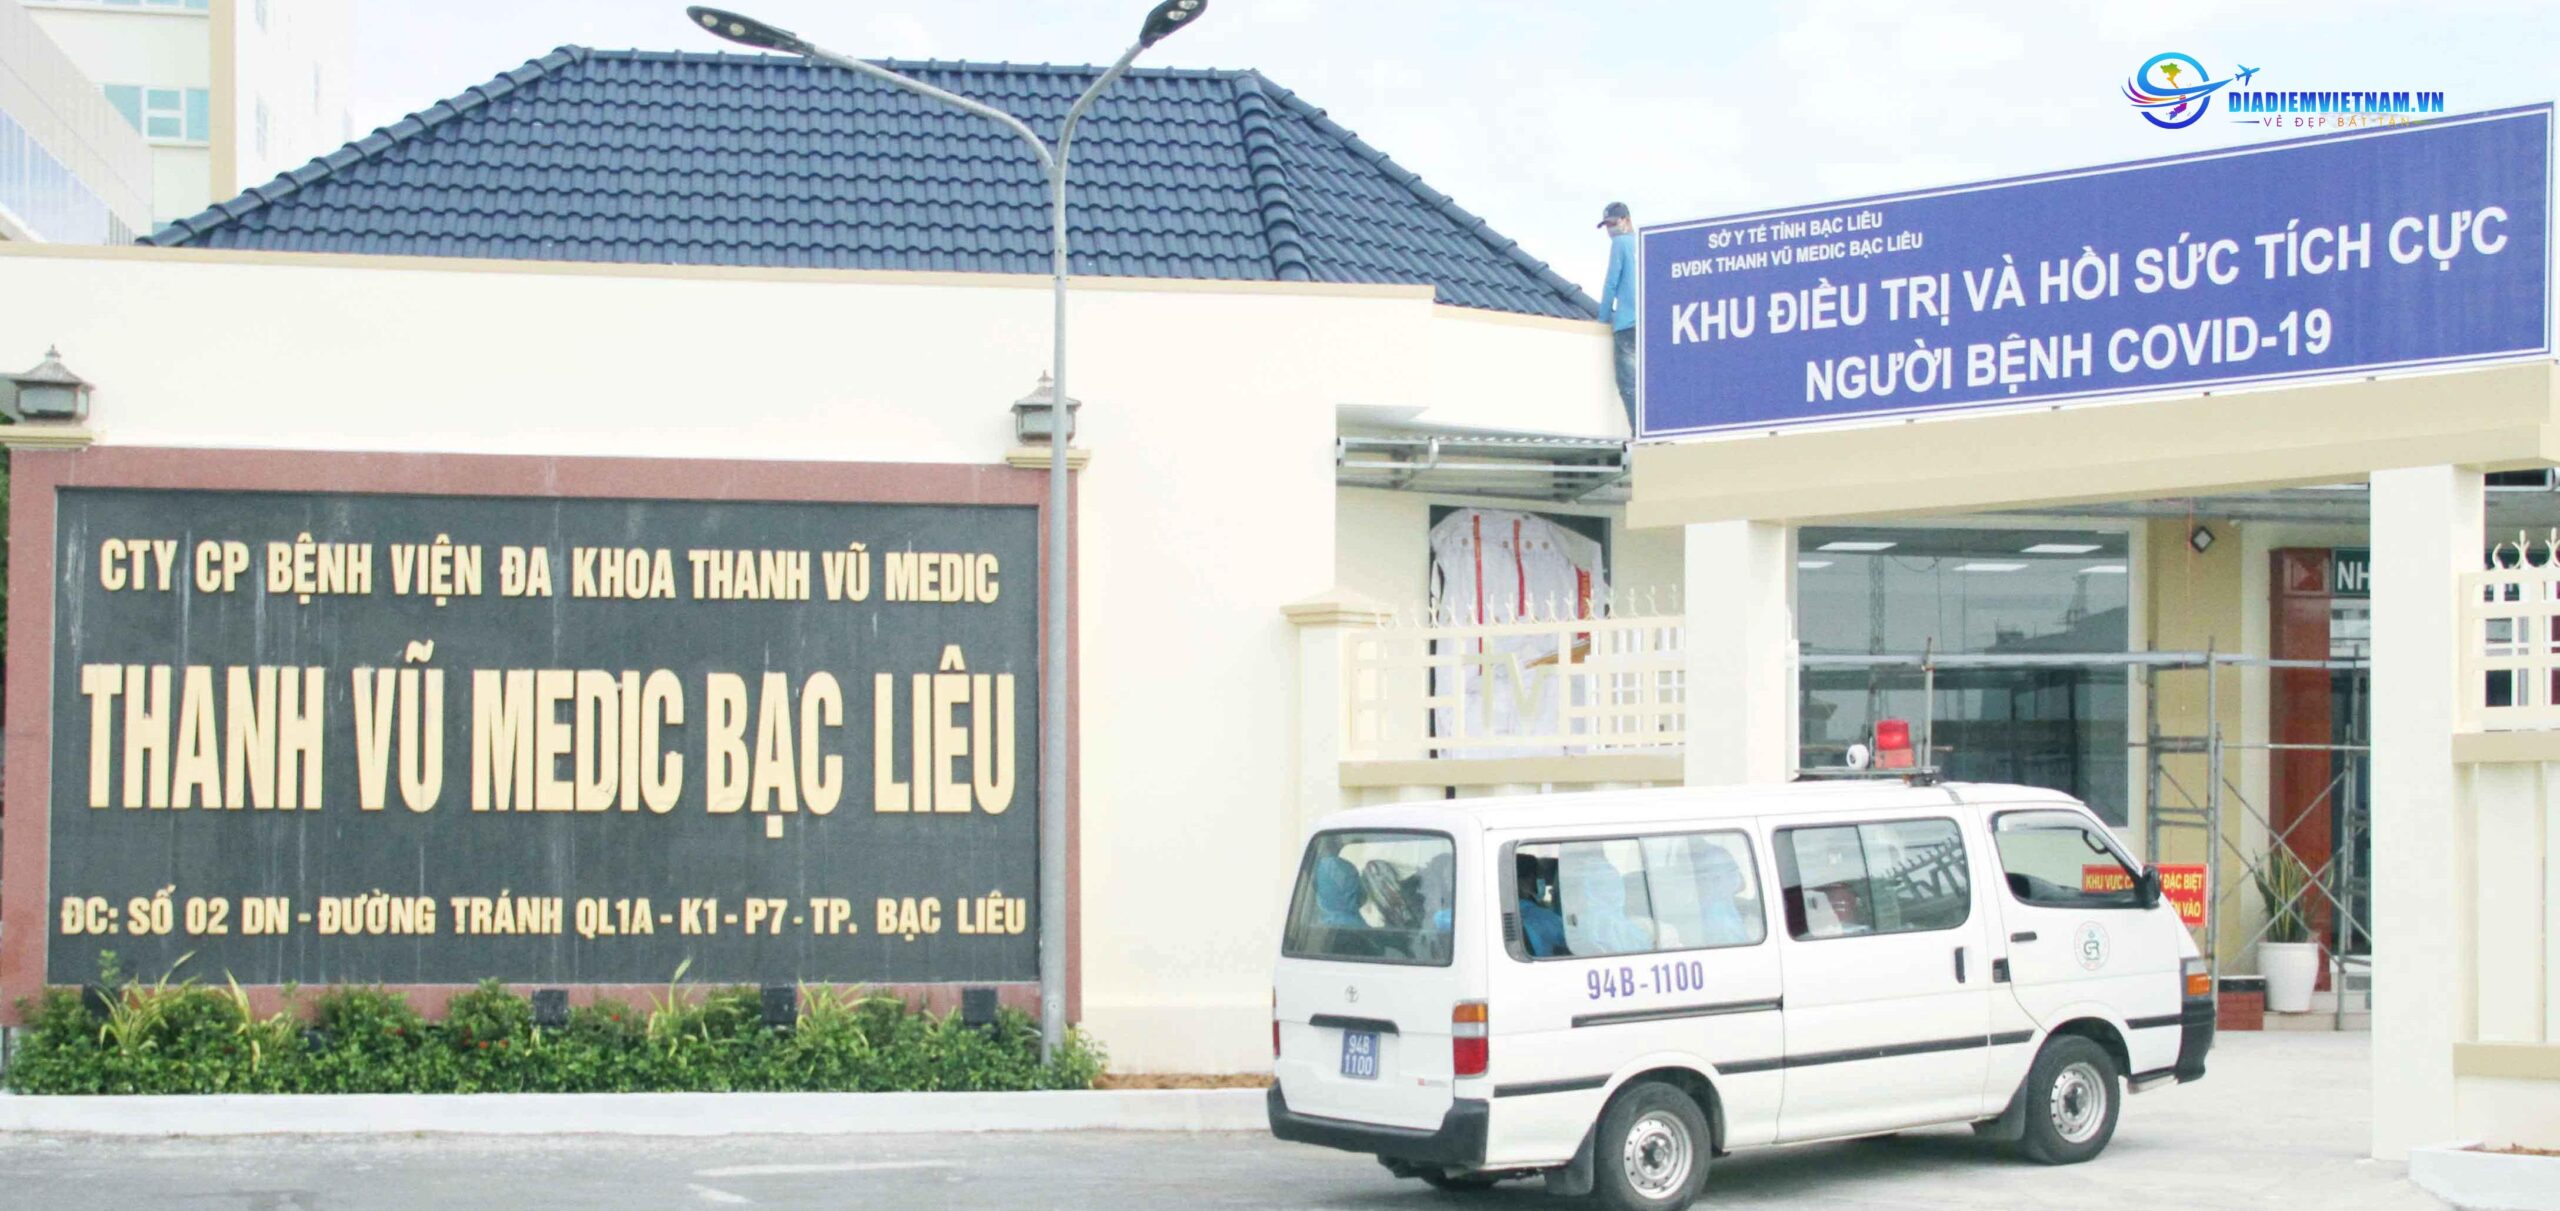 Bệnh viện Bạc Liêu Thanh Vũ Medic